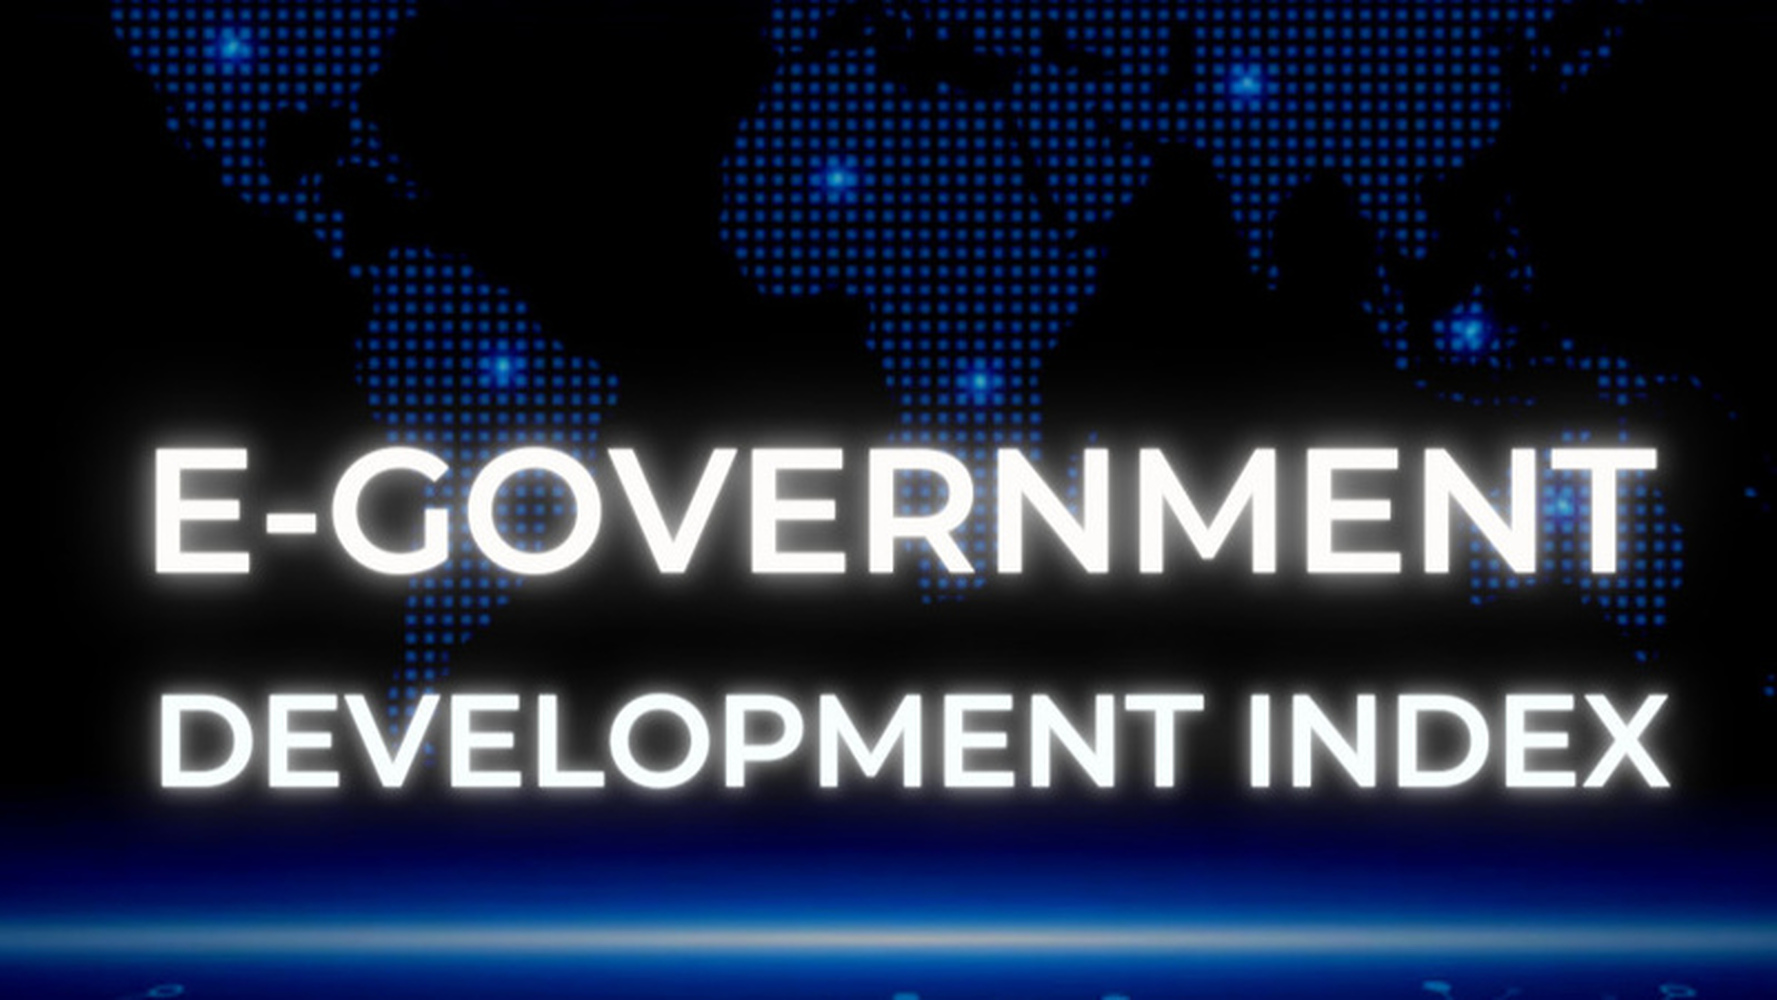 Кыргызстан занял 81-е место в рейтинге развития электронного правительства — Today.kg